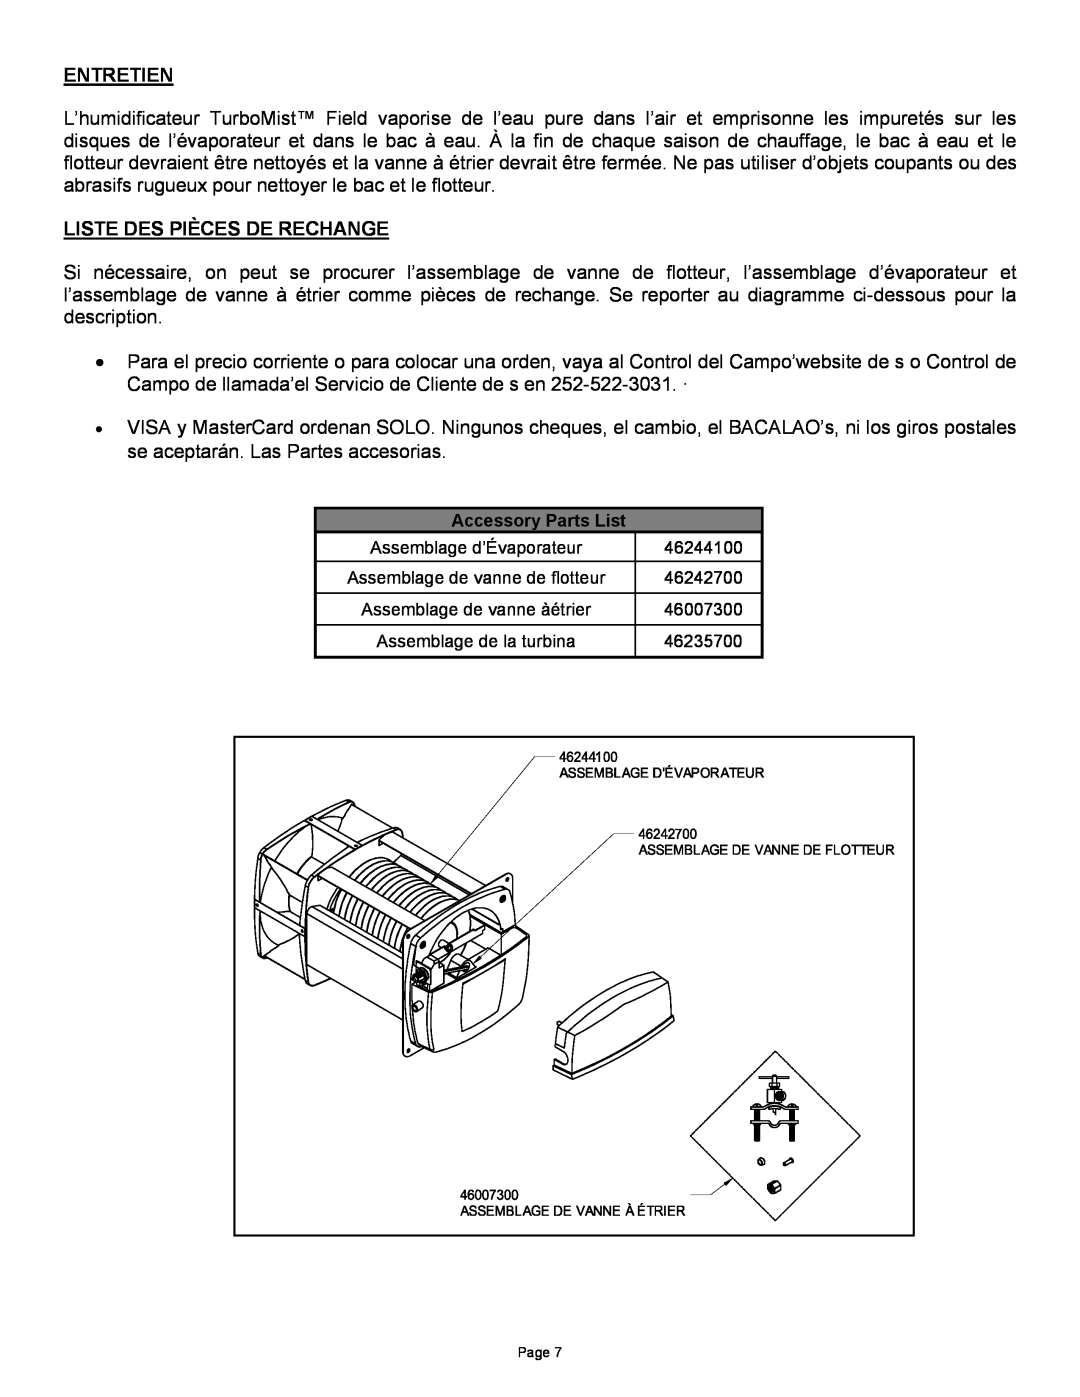 Field Controls TB-1 manual Entretien, Liste Des Pièces De Rechange 